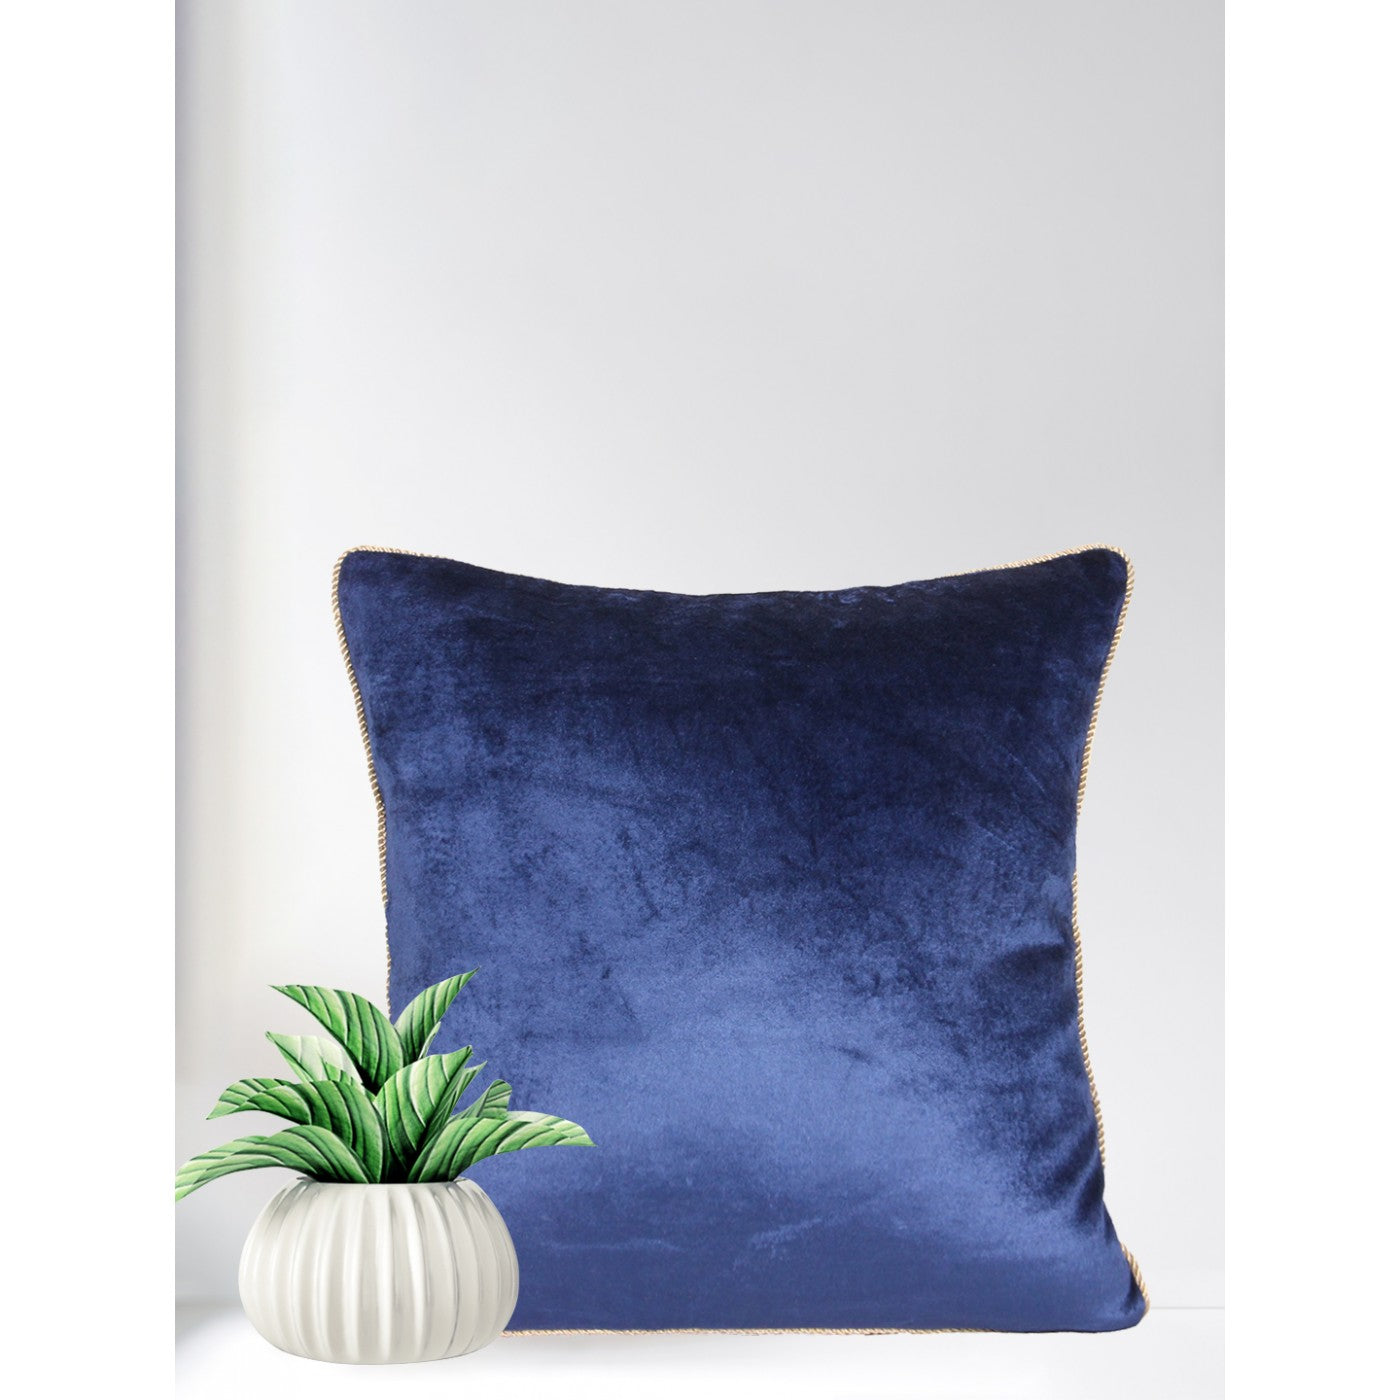 Sapphire Bliss 16x16 Inch Blue Velvet Cushion Cover